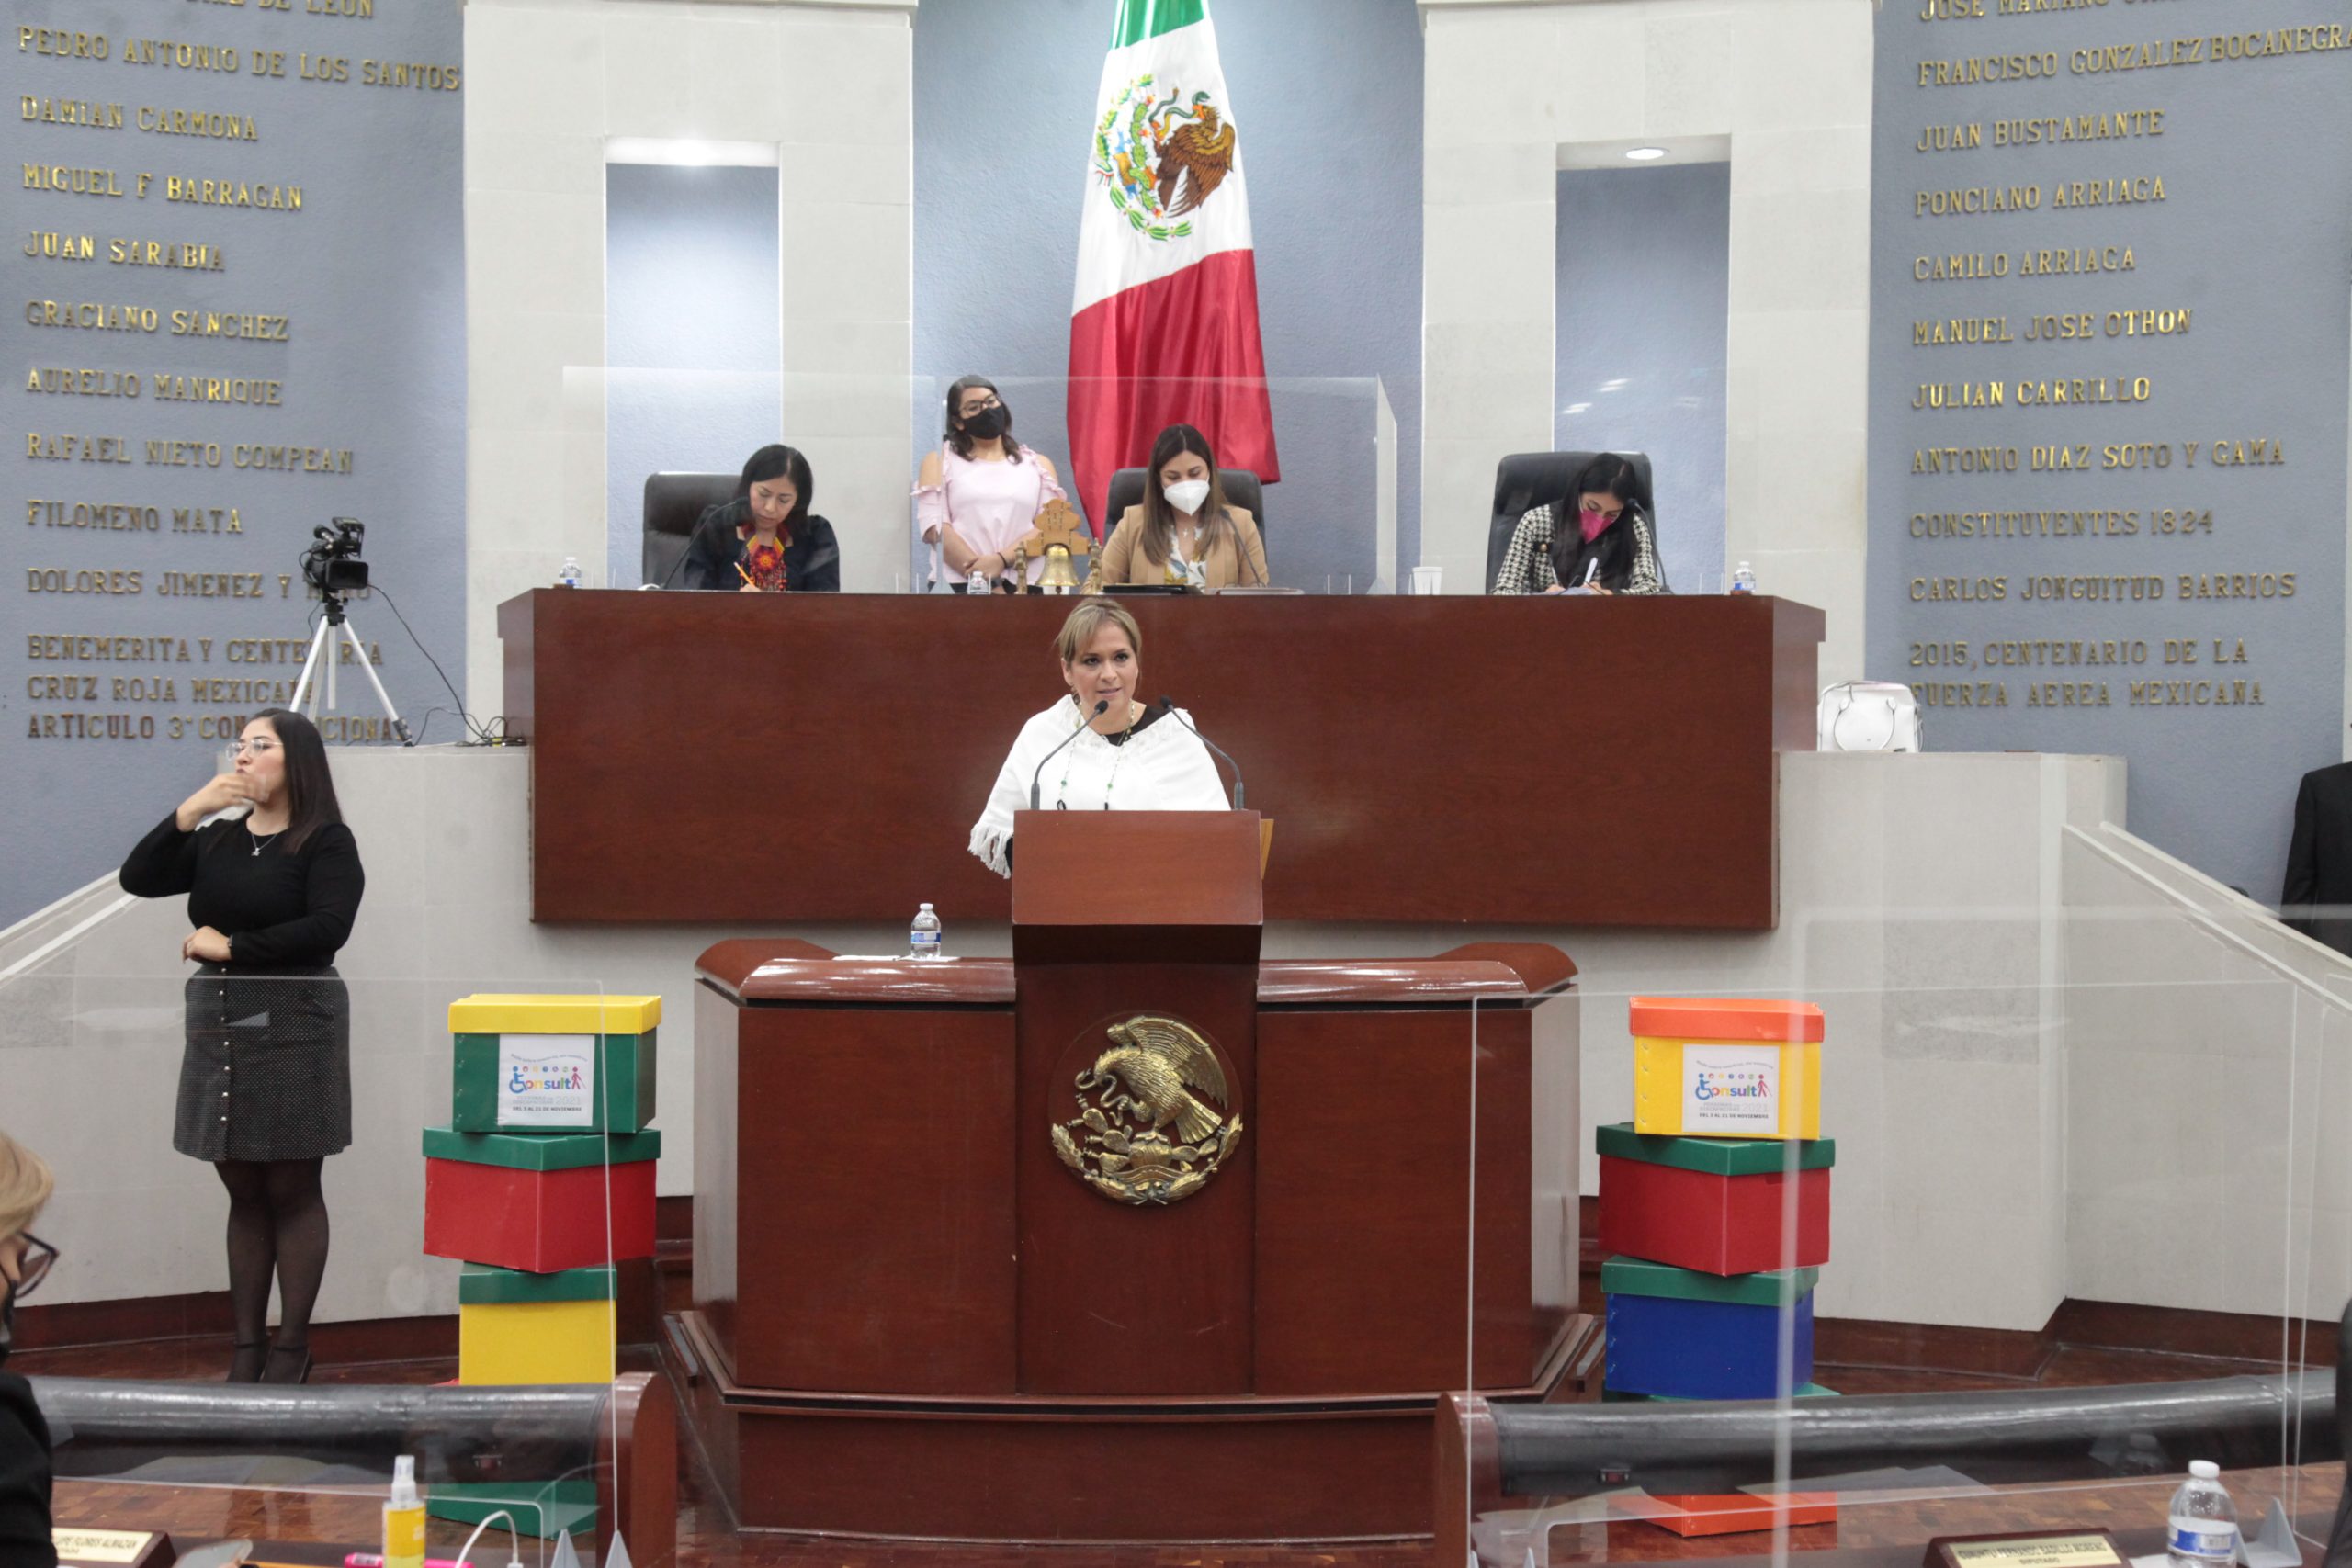 Pleno del Congreso del Estado aprobó convocatoria para la Presea al Mérito “Plan de San Luis 2021”